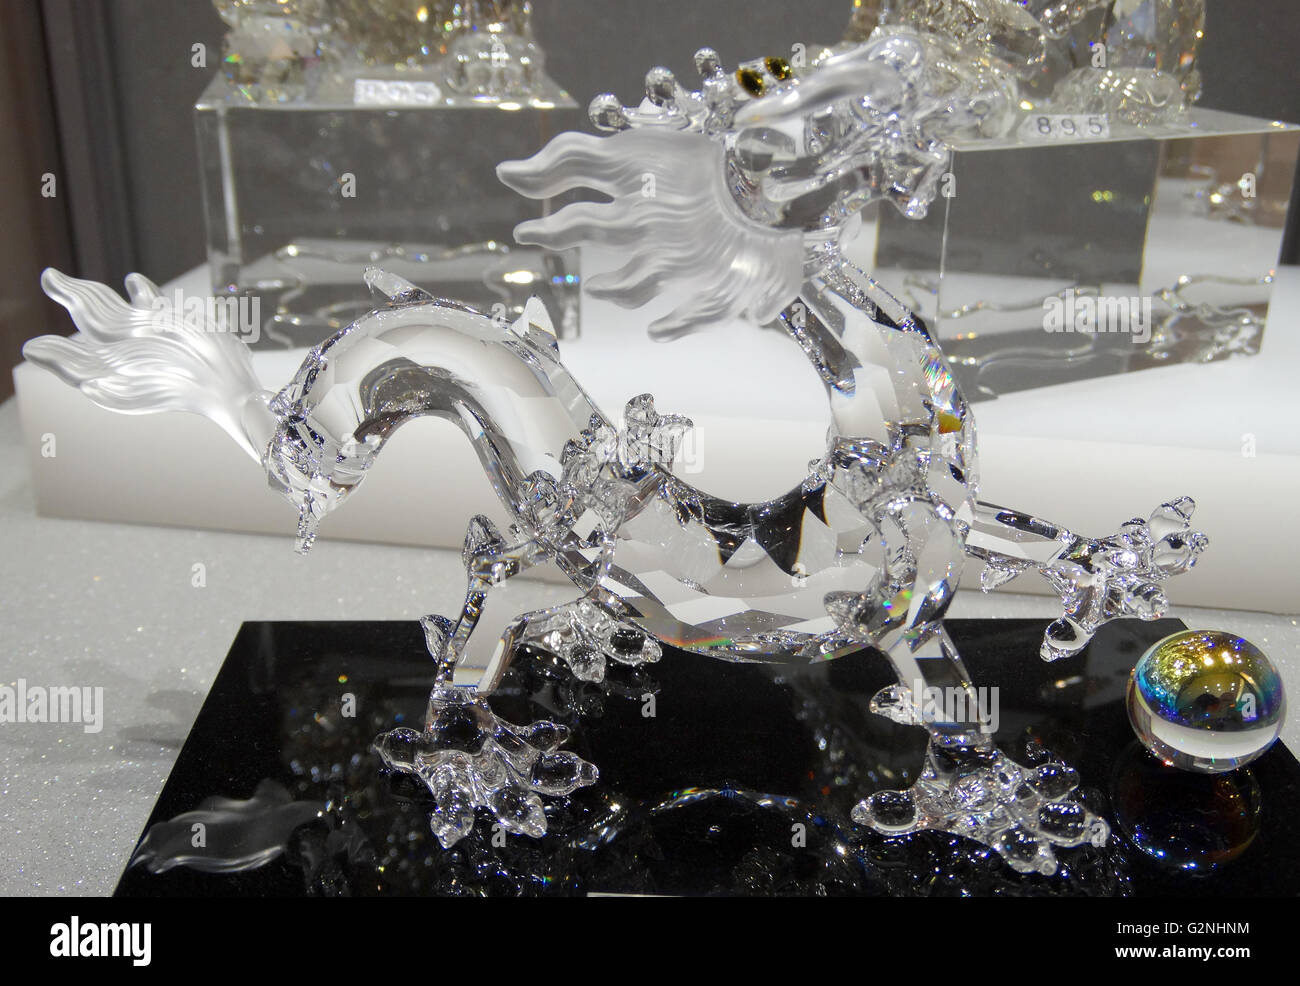 Swarovski Crystal Dragon. Swarovski est un producteur autrichien de luxe couper verre au plomb. Fondé par Daniel Swarovski (1862-1956). Datée 2014 Banque D'Images